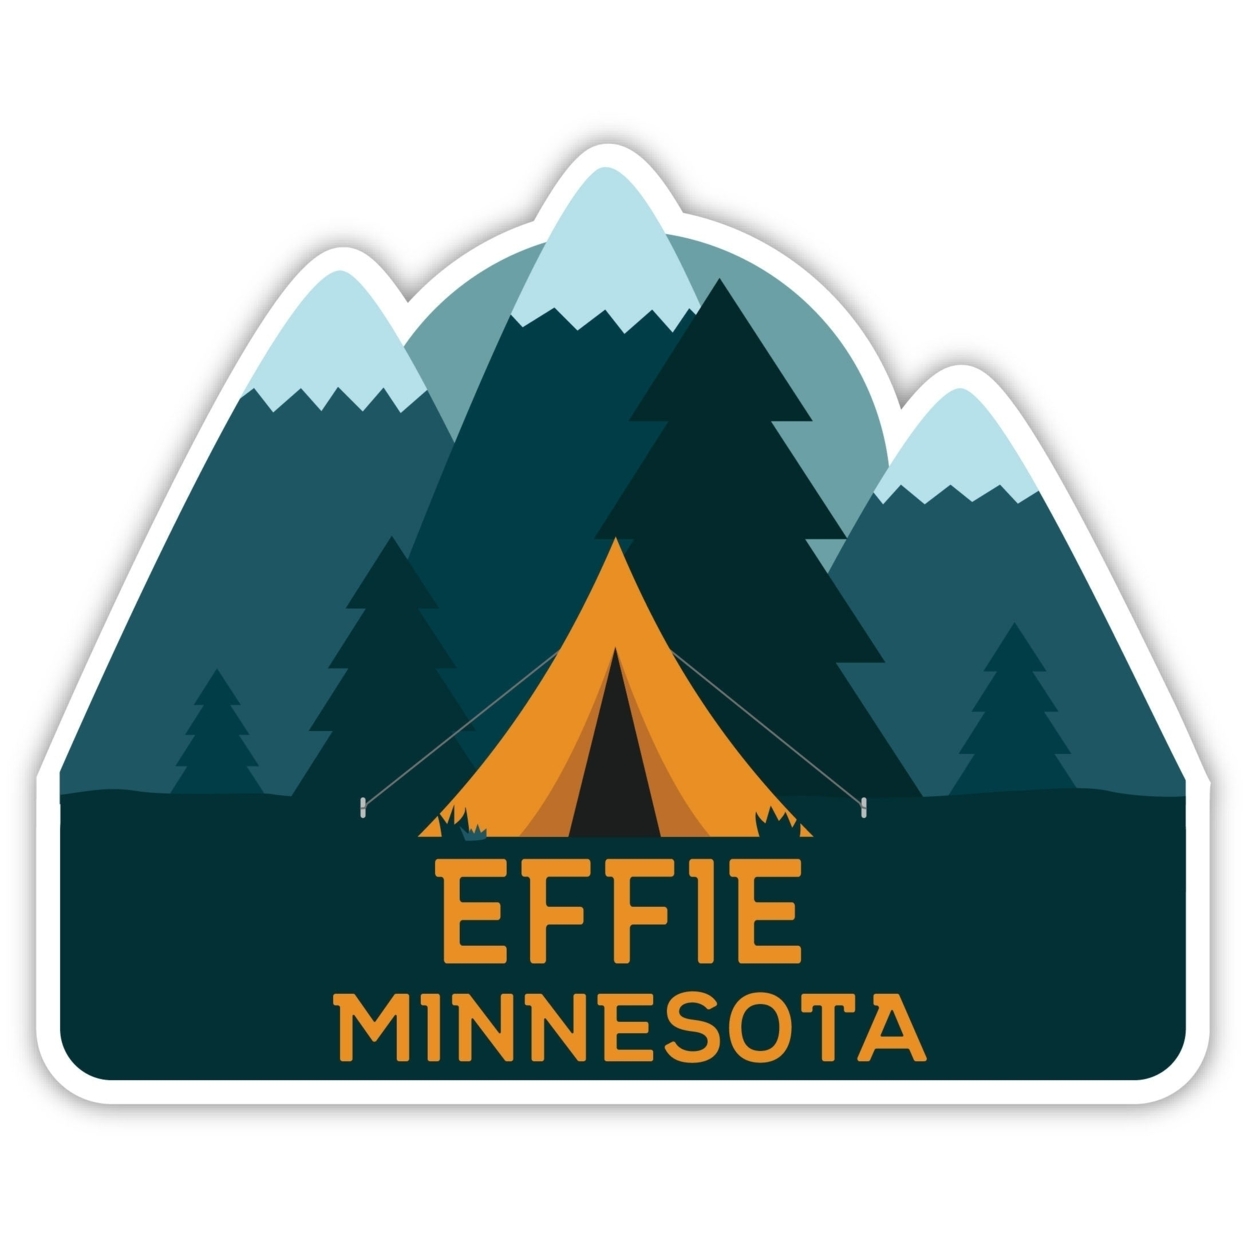 Effie Minnesota Souvenir Decorative Stickers (Choose Theme And Size) - Single Unit, 12-Inch, Tent